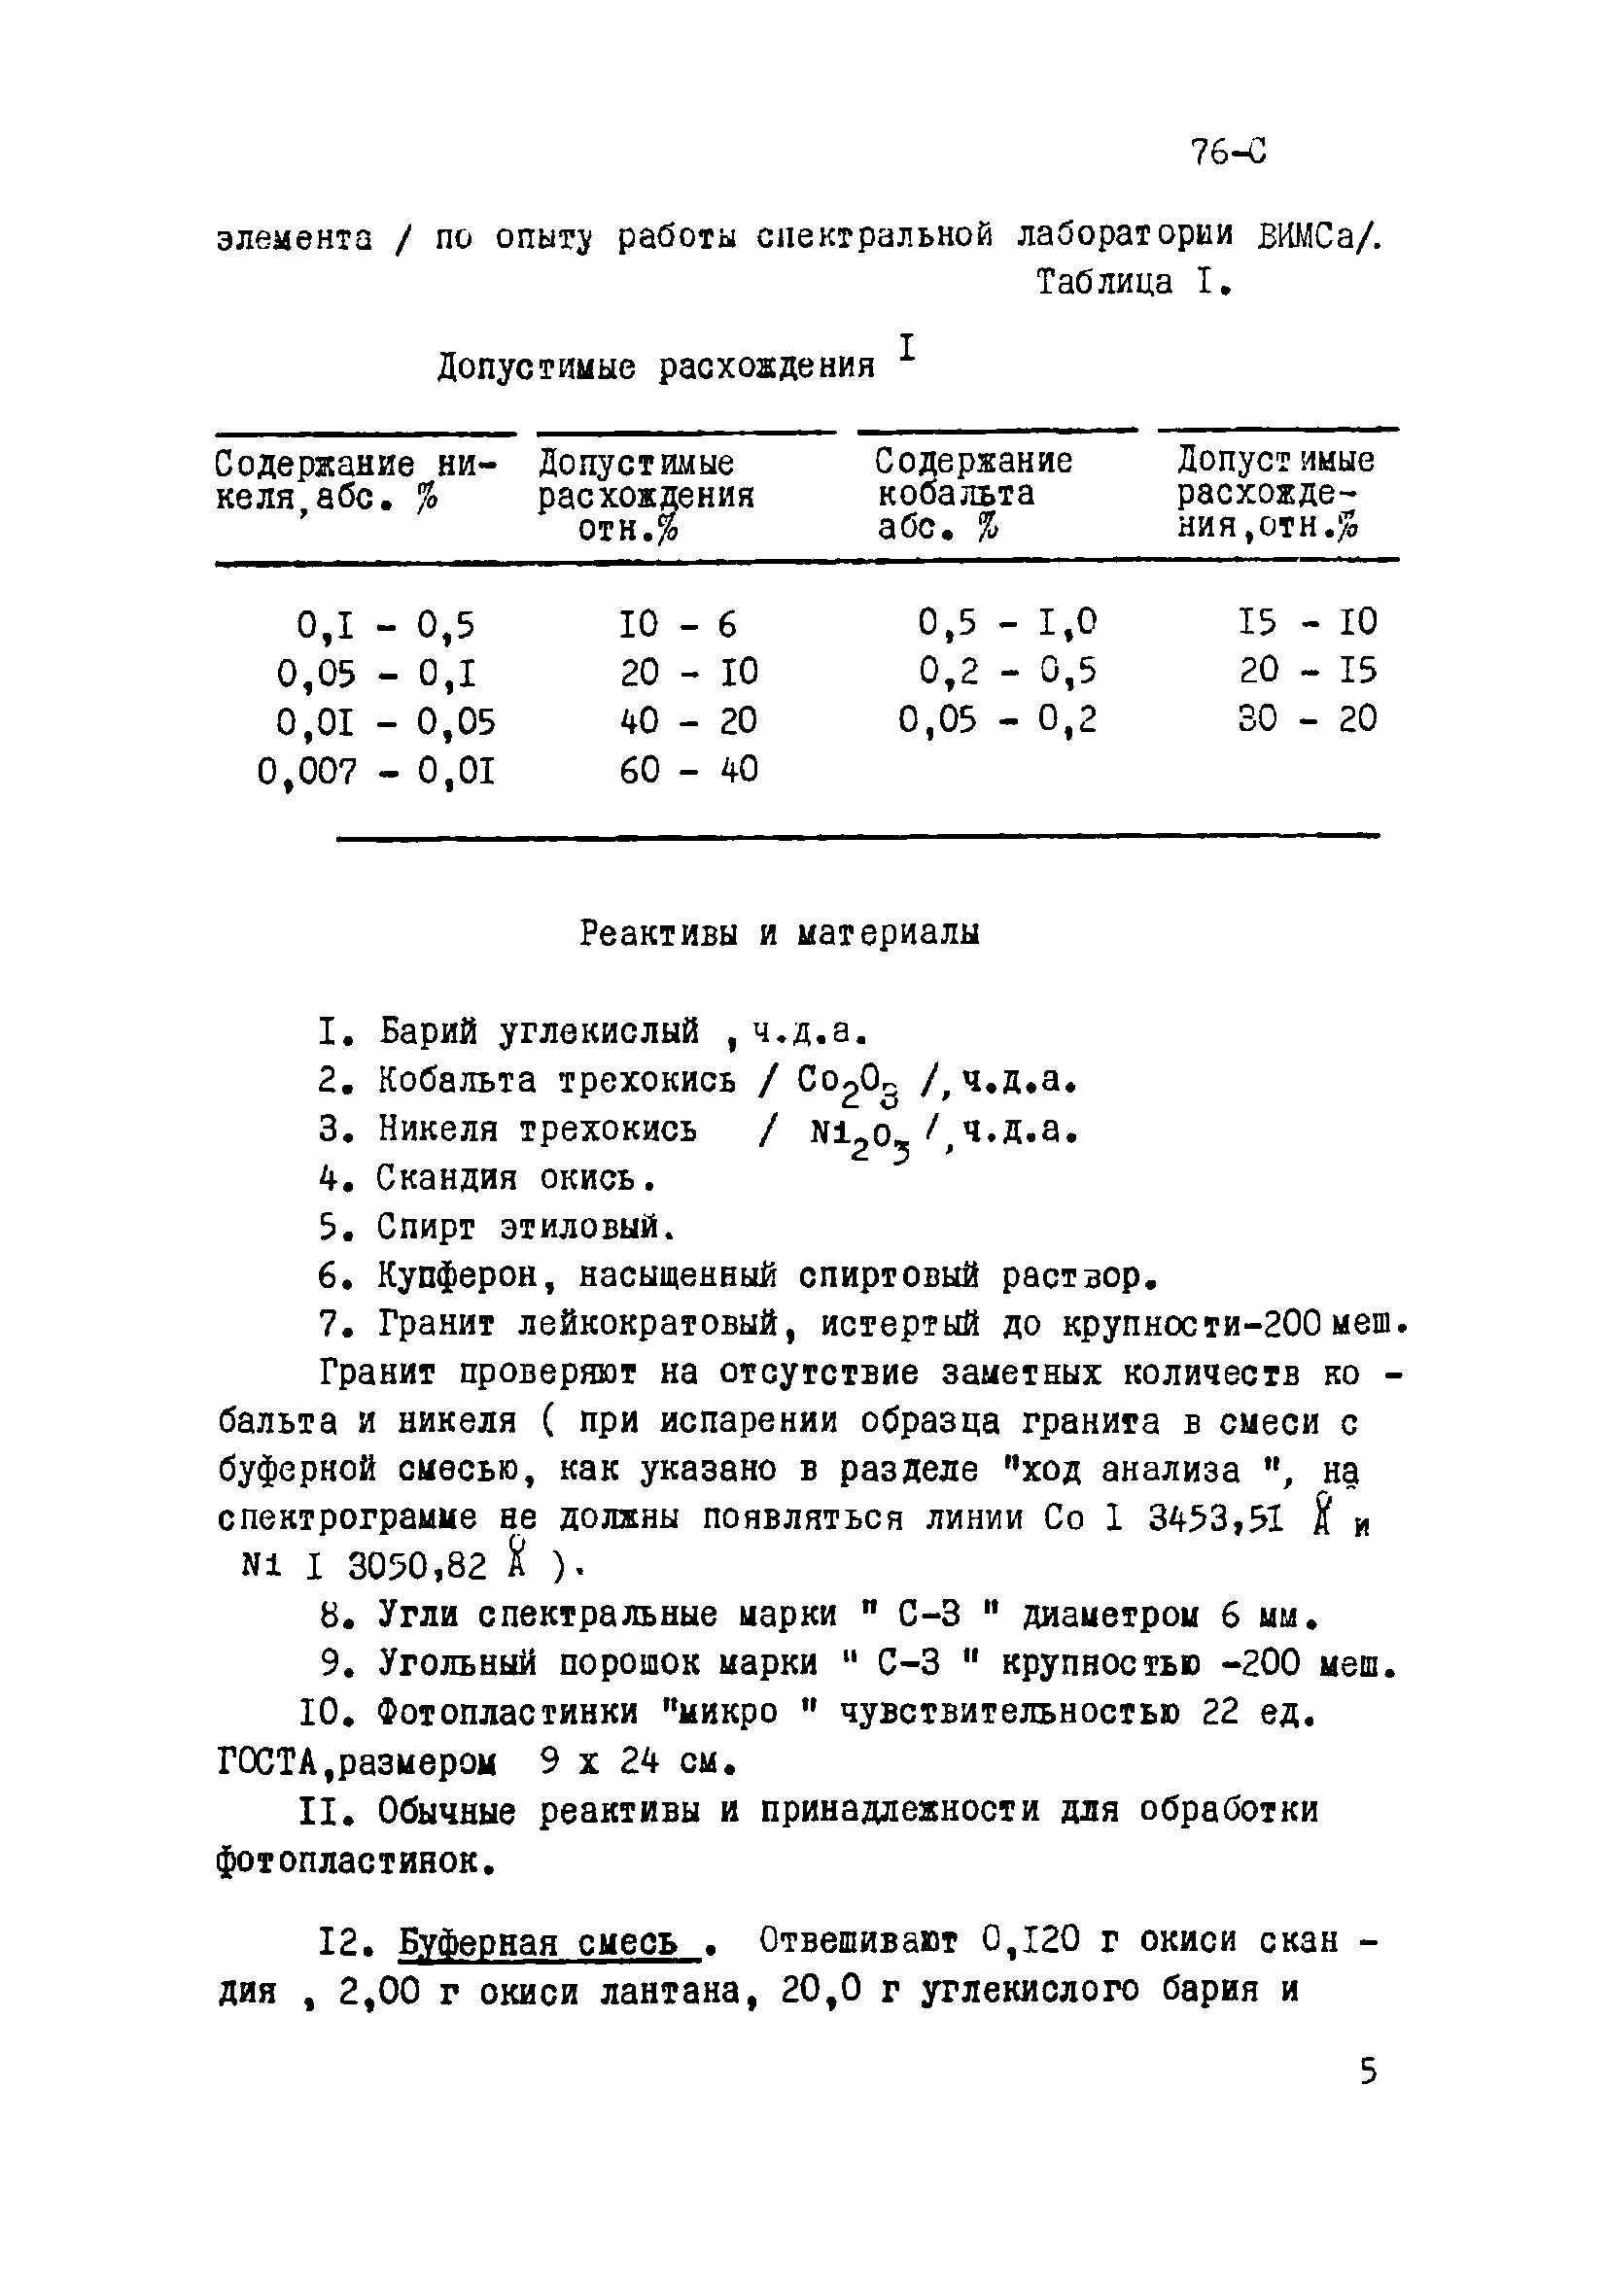 Инструкция НСАМ 76-С